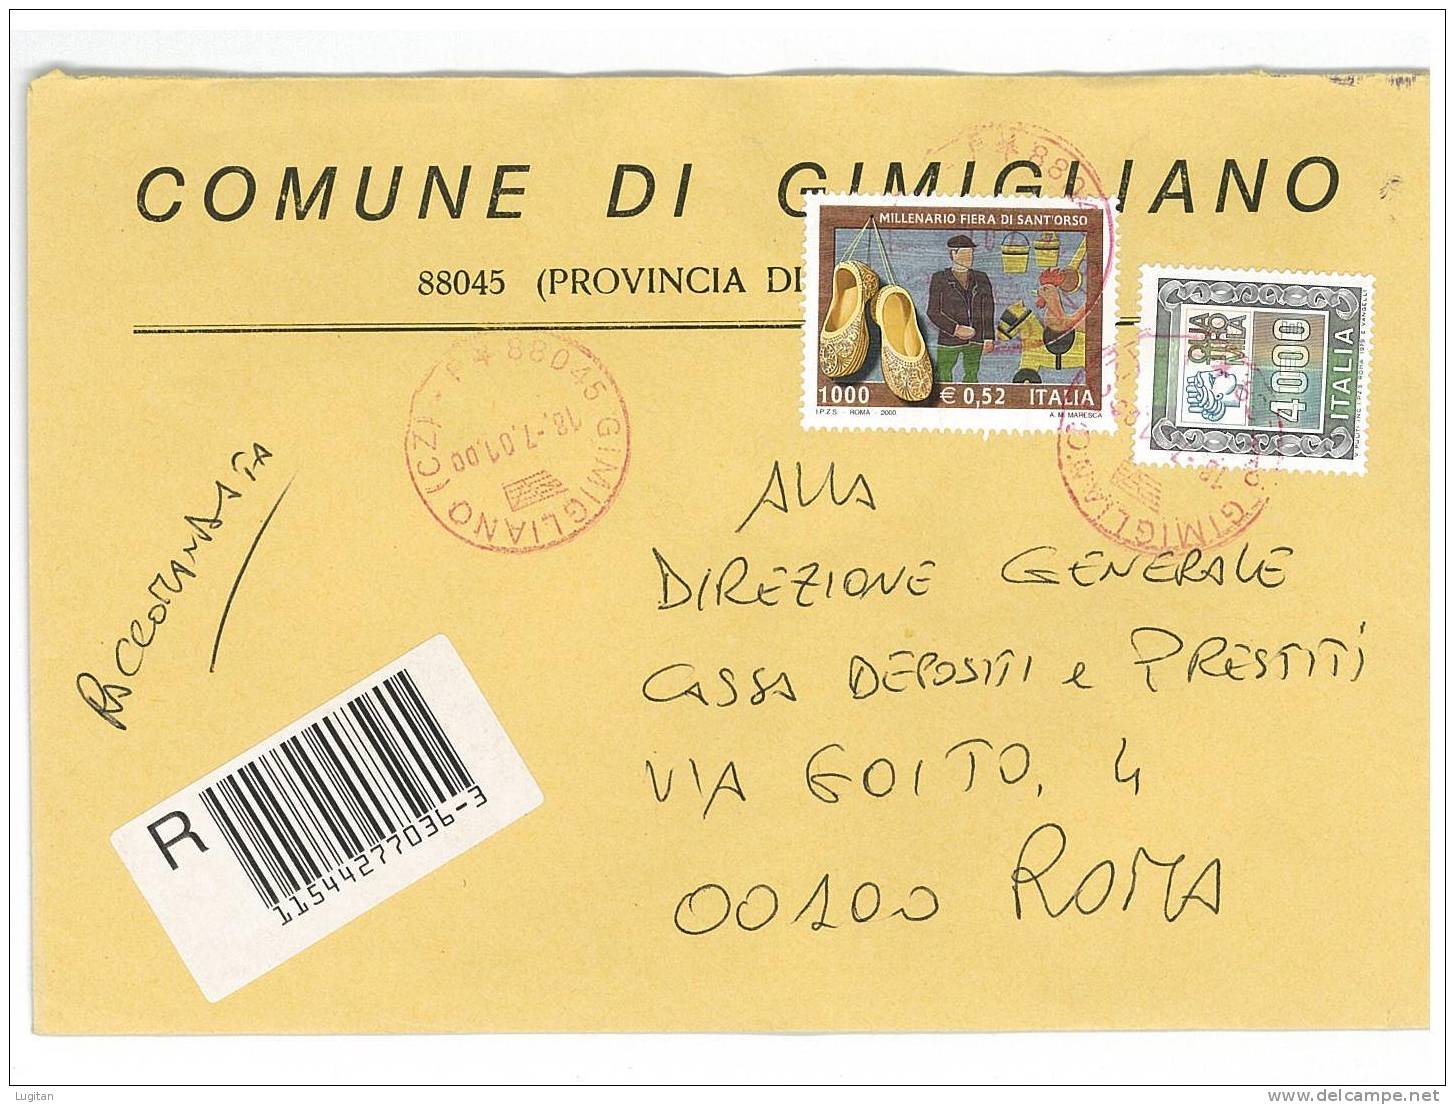 GIMIGLIANO CAP 88045 PROV. CATANZARO  ANNO 2002  CZ - R  - CALABRIA  -TEMATICA COMUNI D'ITALIA - STORIA POSTALE - Macchine Per Obliterare (EMA)